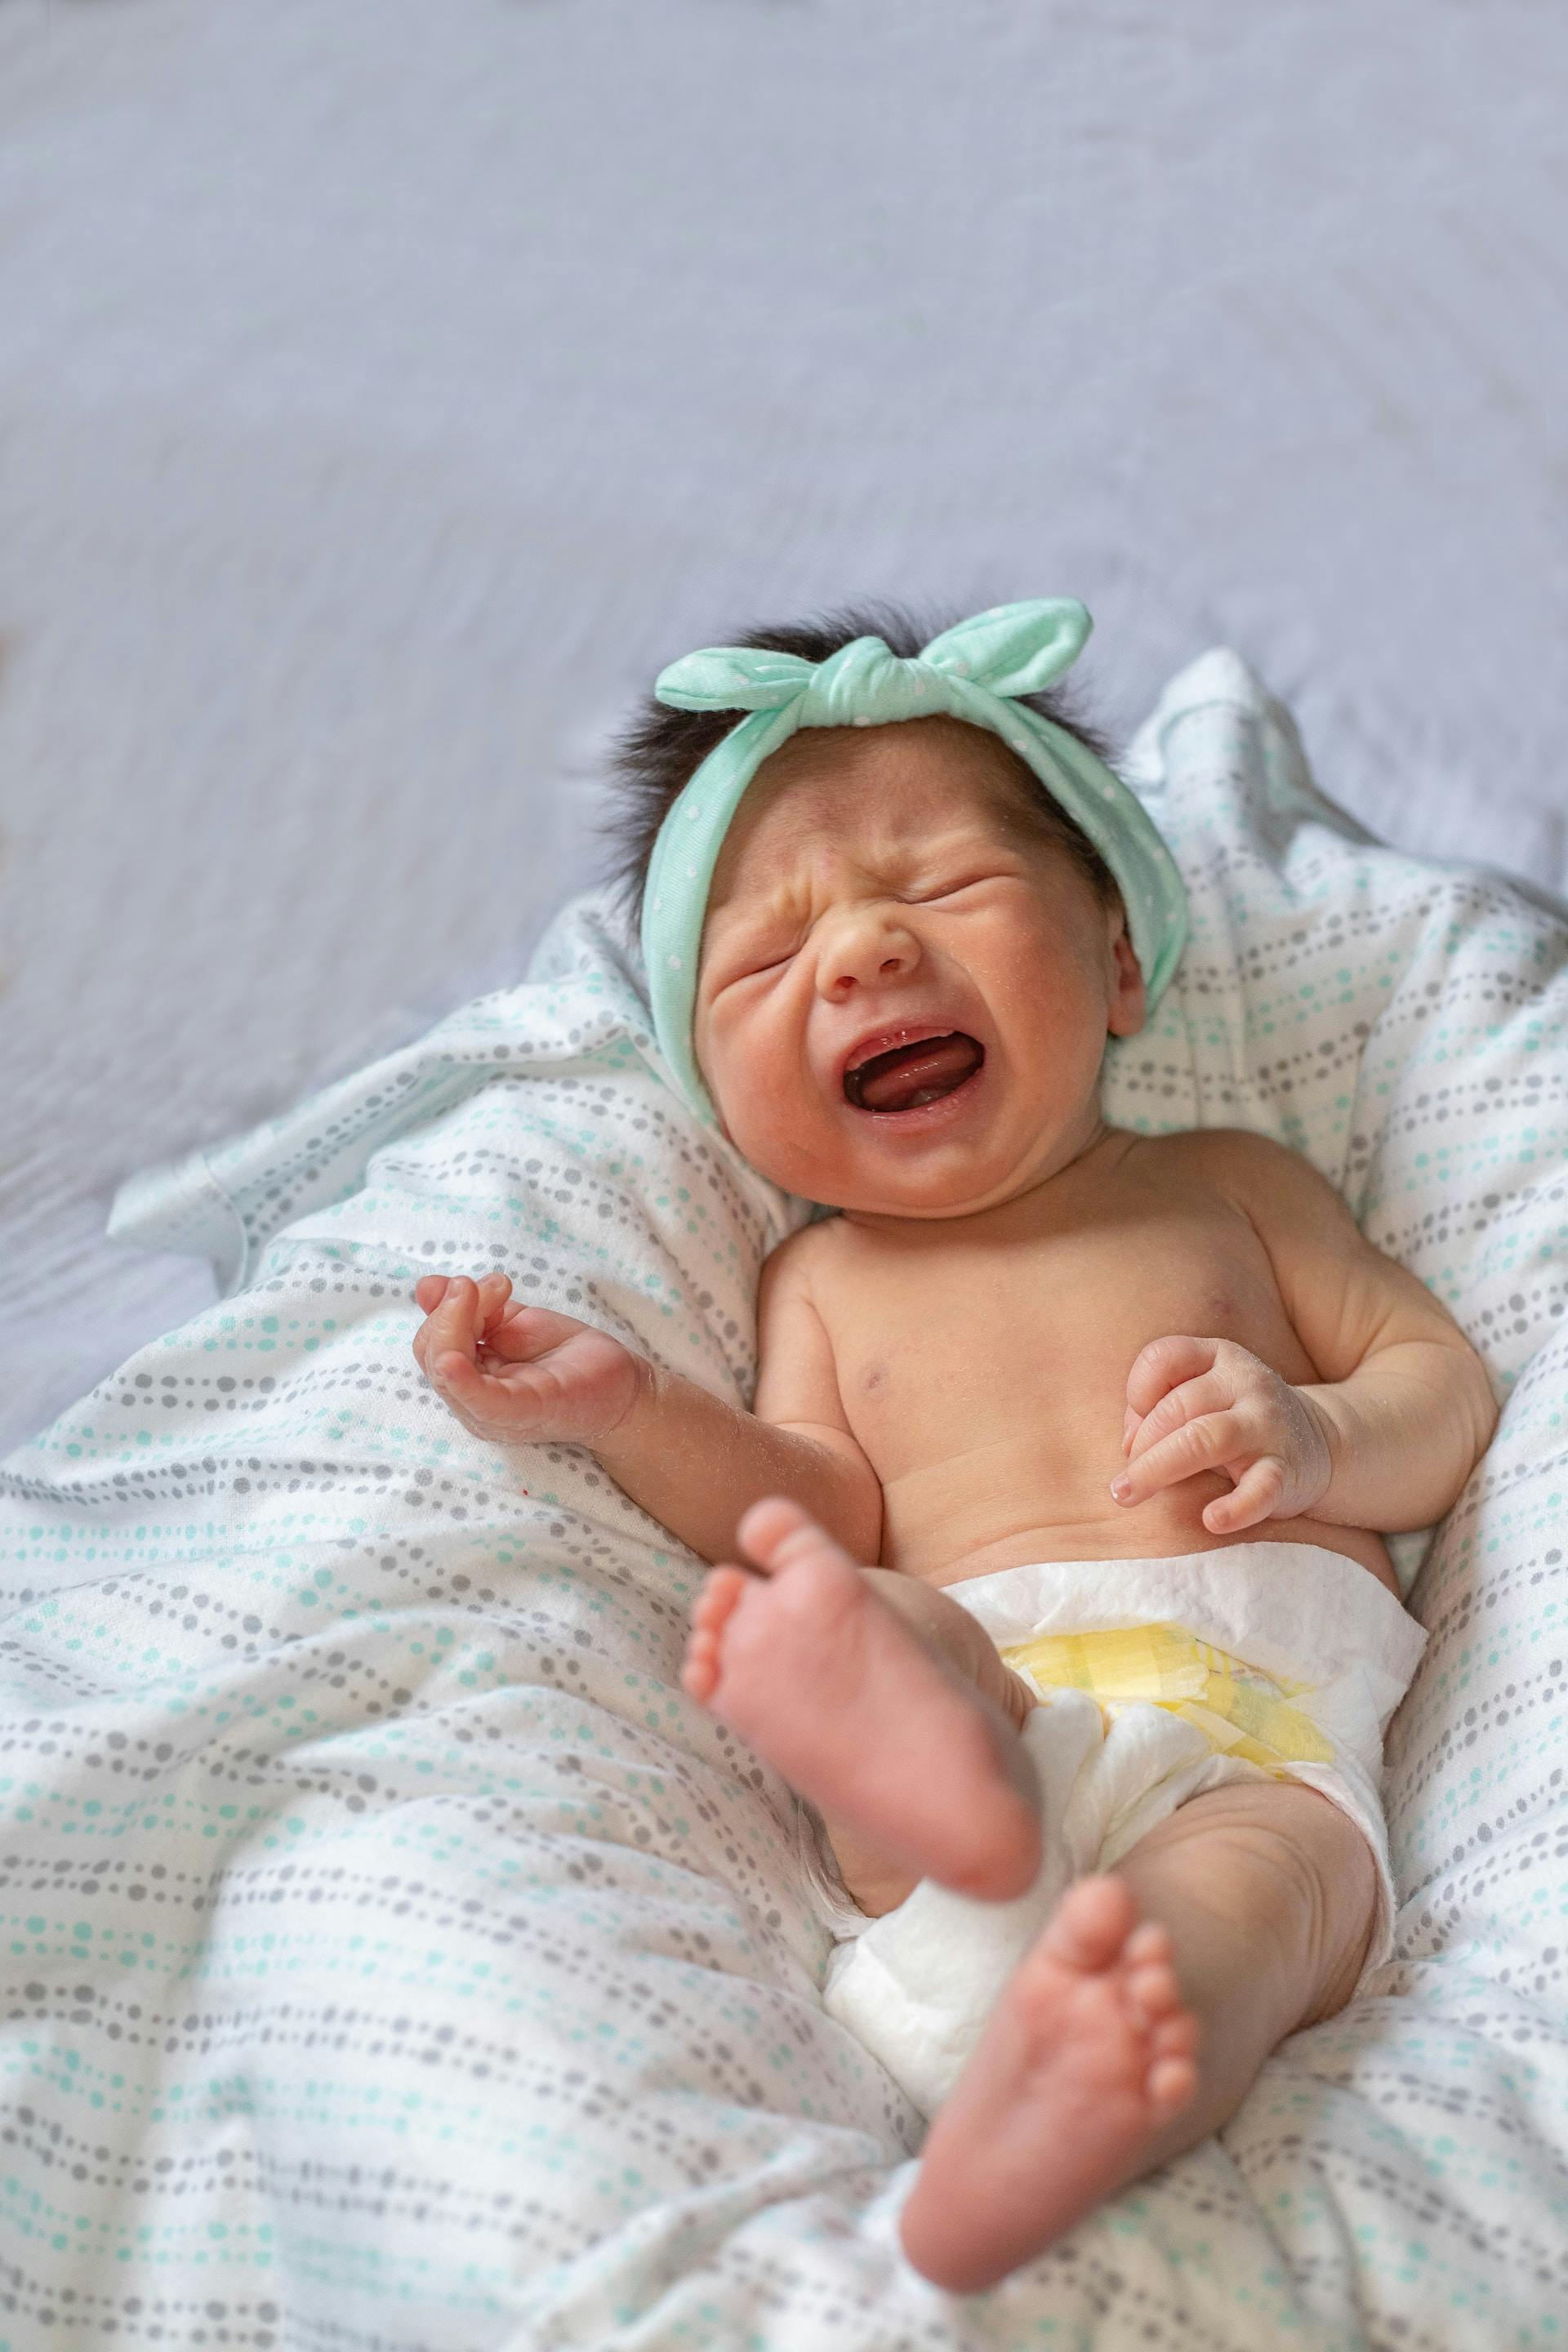 5 gestes pour calmer les coliques du nourrisson